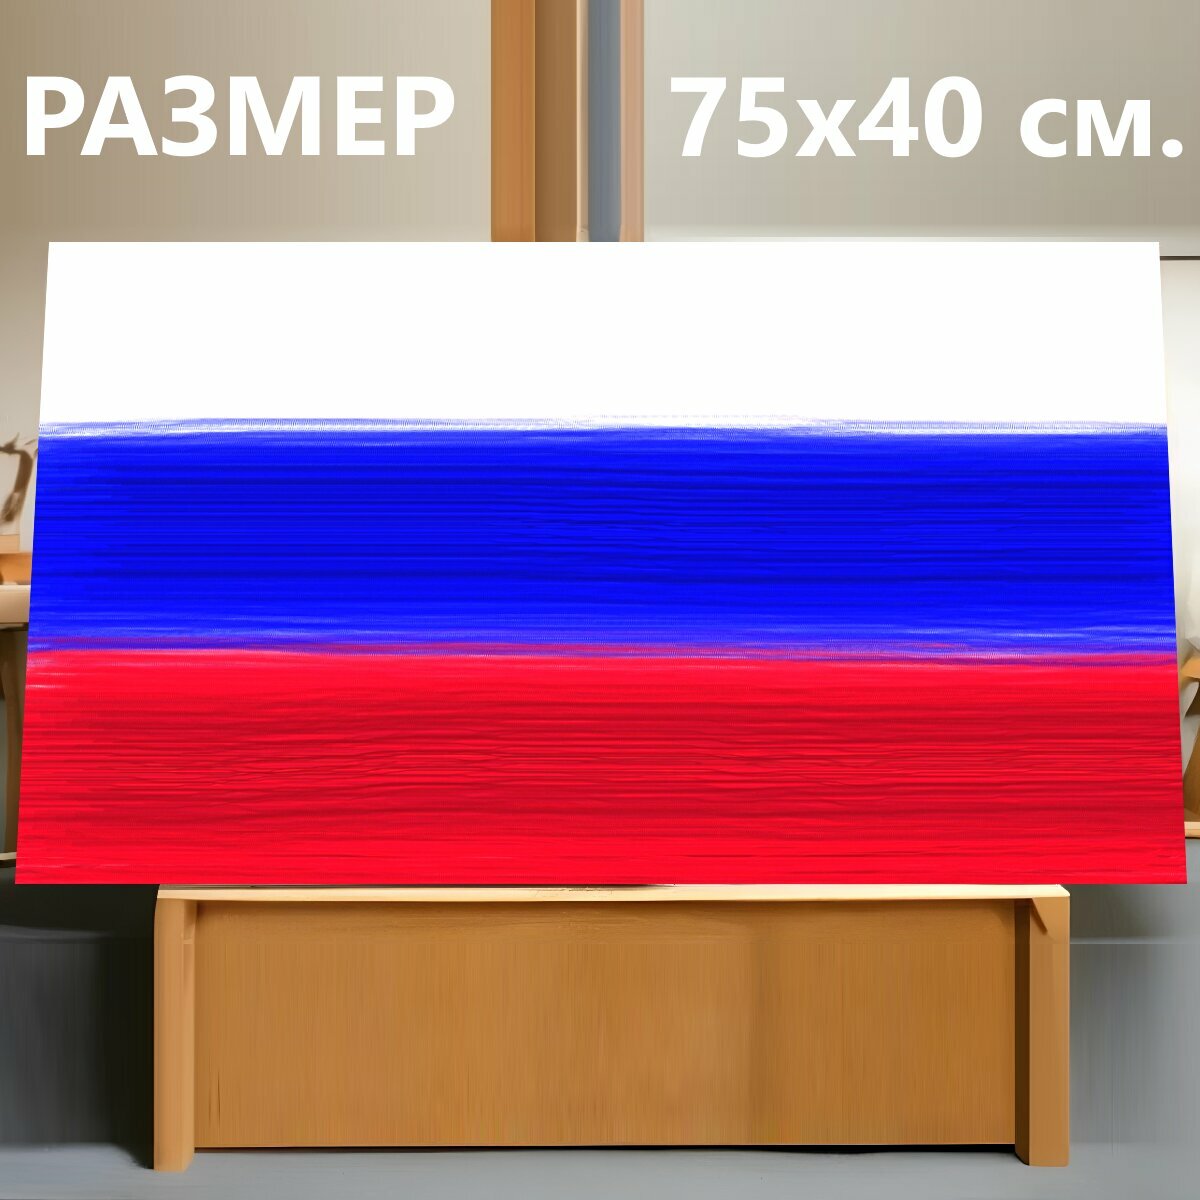 Картина на холсте "Герб россии, флаг, флаг россии" на подрамнике 75х40 см. для интерьера